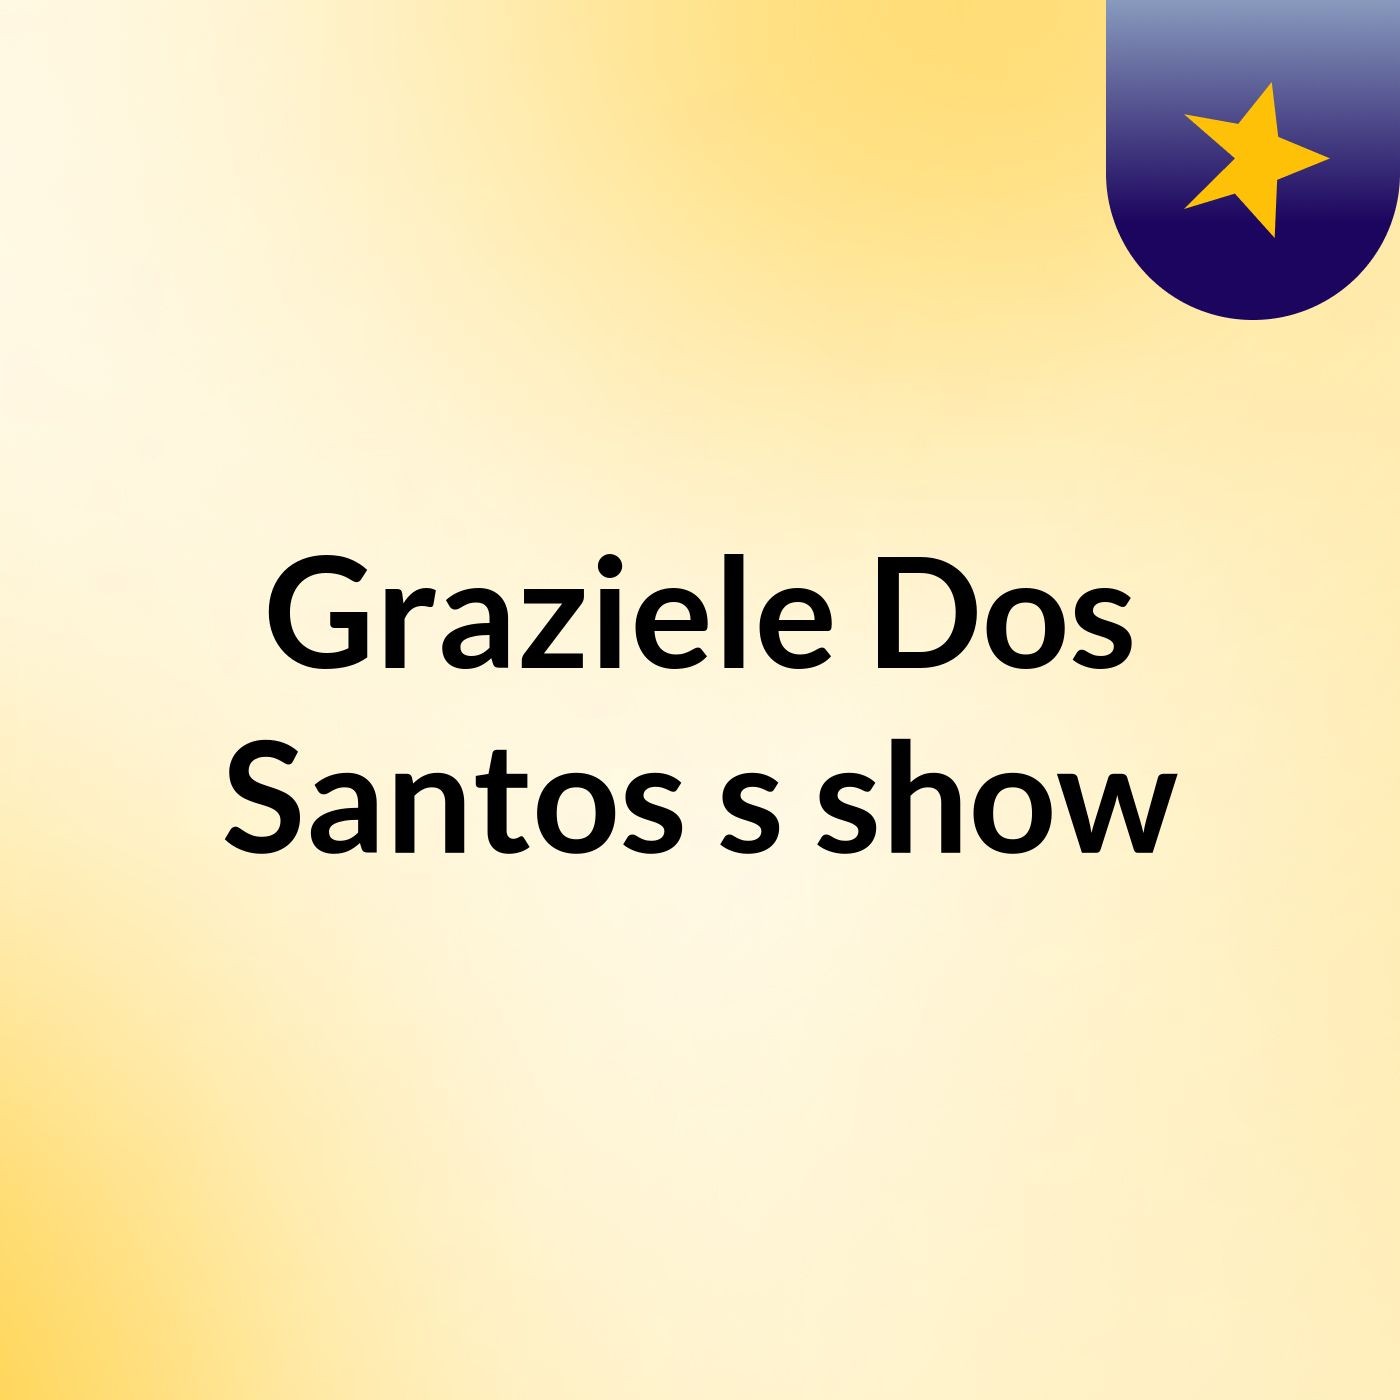 Graziele Dos Santos's show